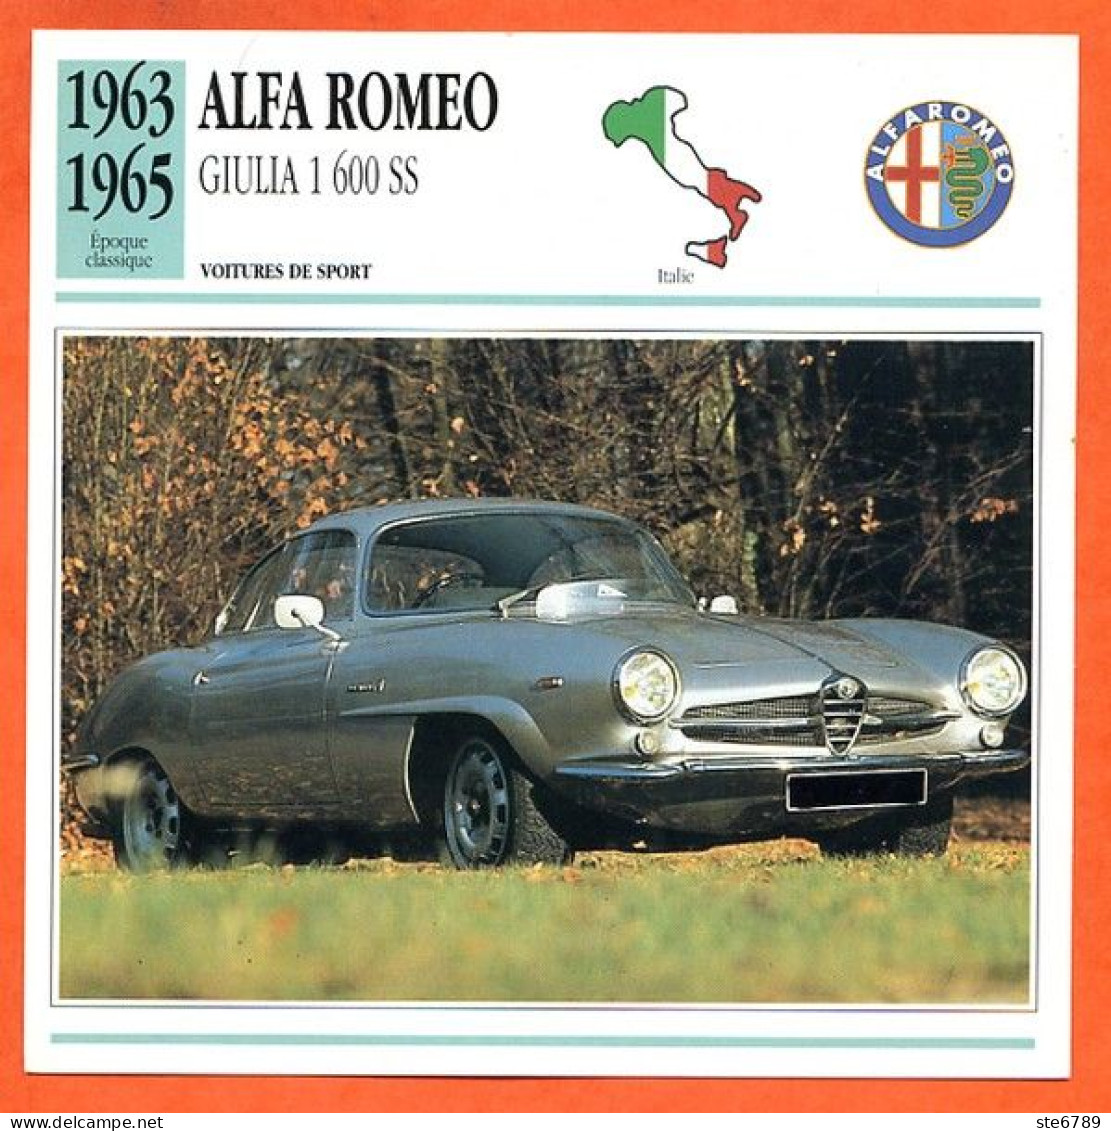 ALFA ROMEO GIULIA 1600 S 1963 Voiture De Sport Italie Fiche Technique Automobile - Coches